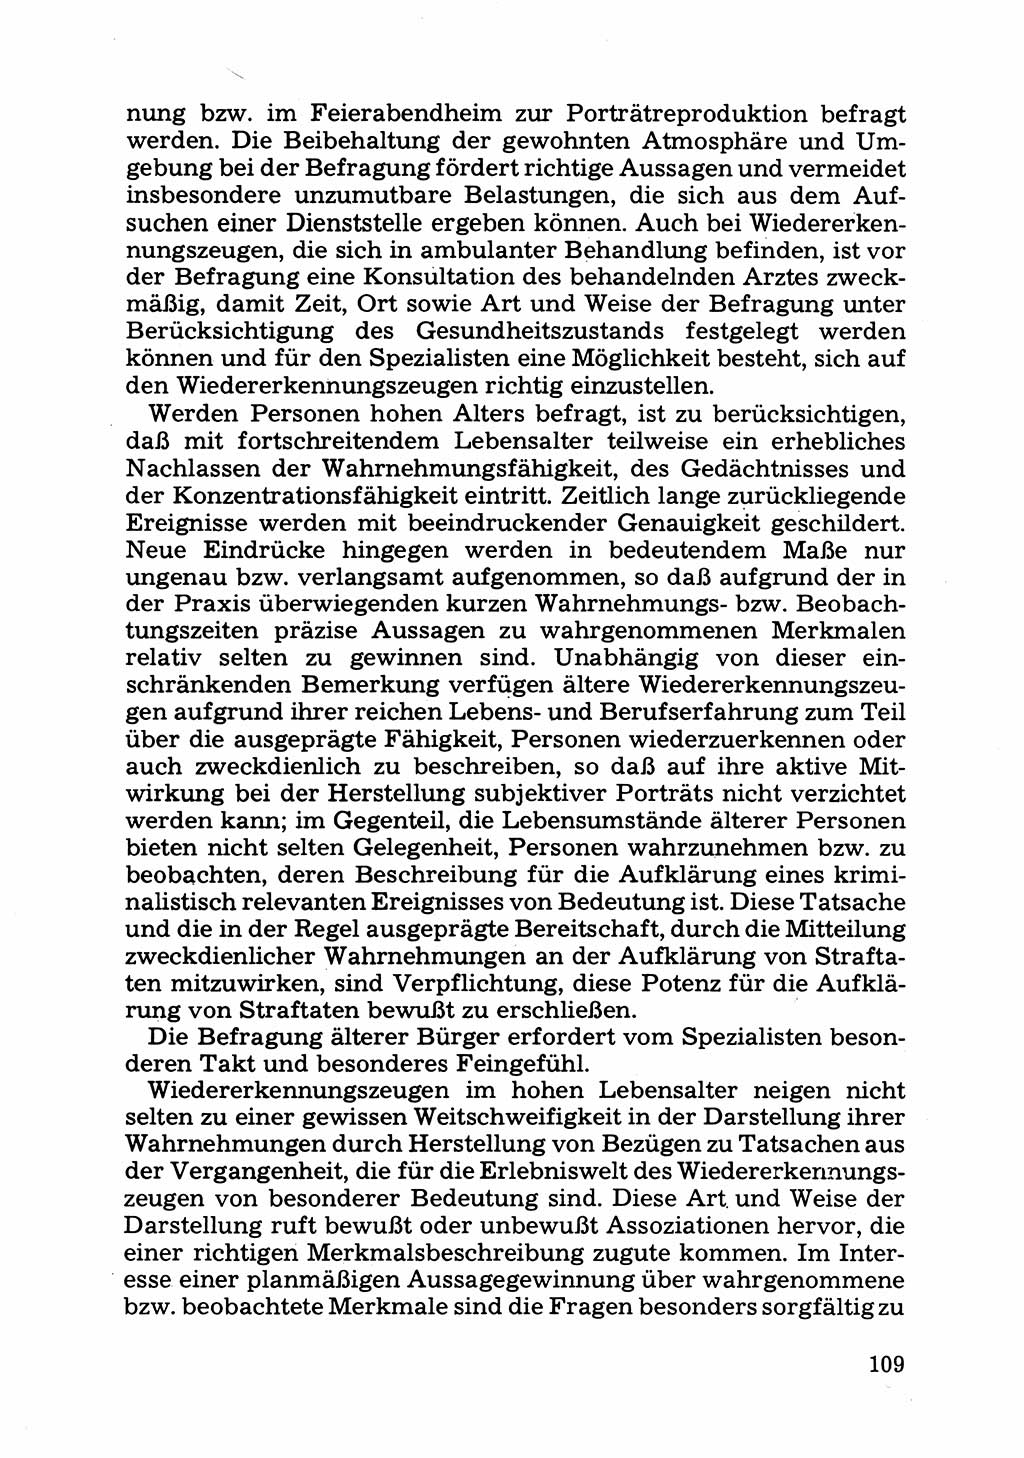 Das subjektive Porträt [Deutsche Demokratische Republik (DDR)] 1981, Seite 109 (Subj. Port. DDR 1981, S. 109)